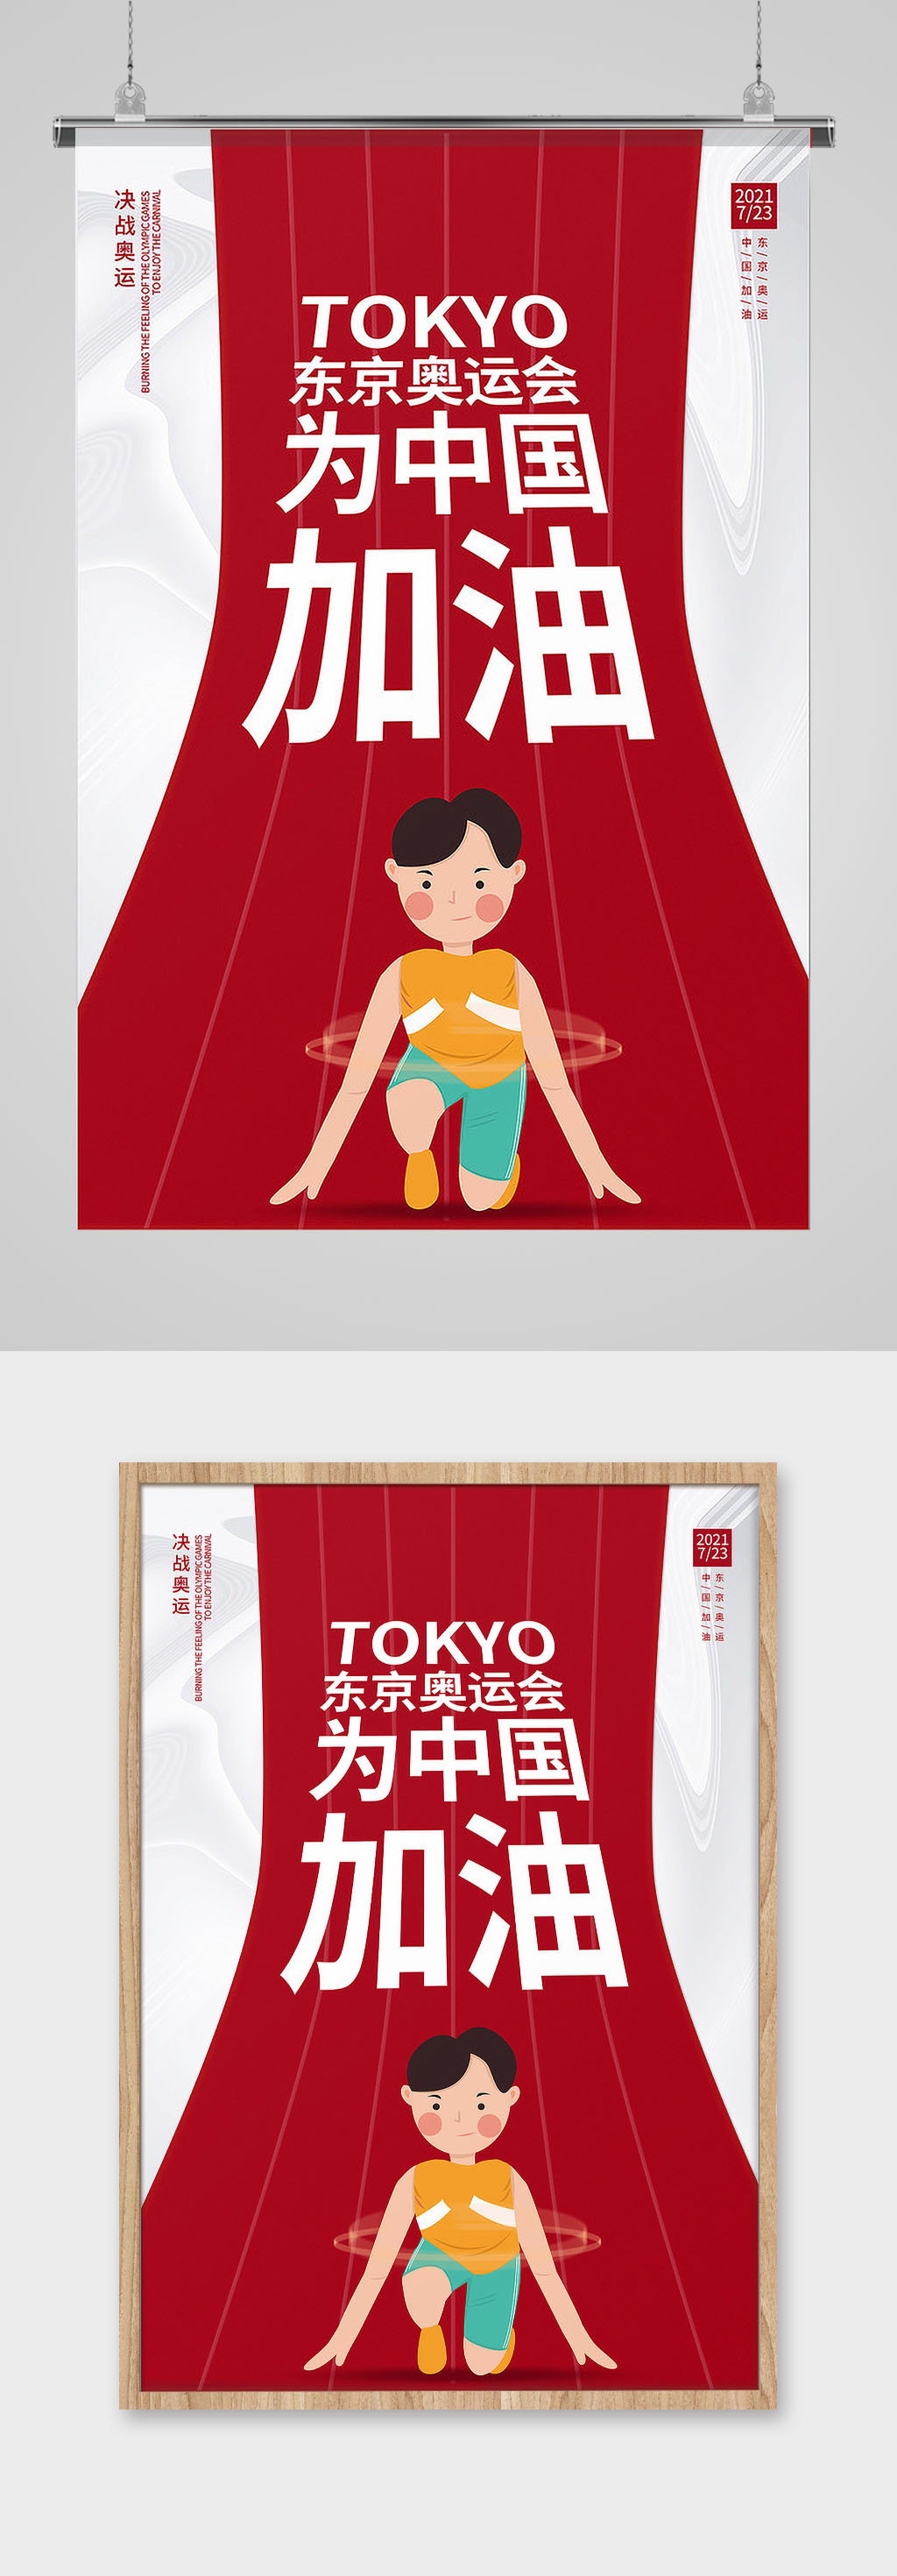 东京奥运会热点素材图片